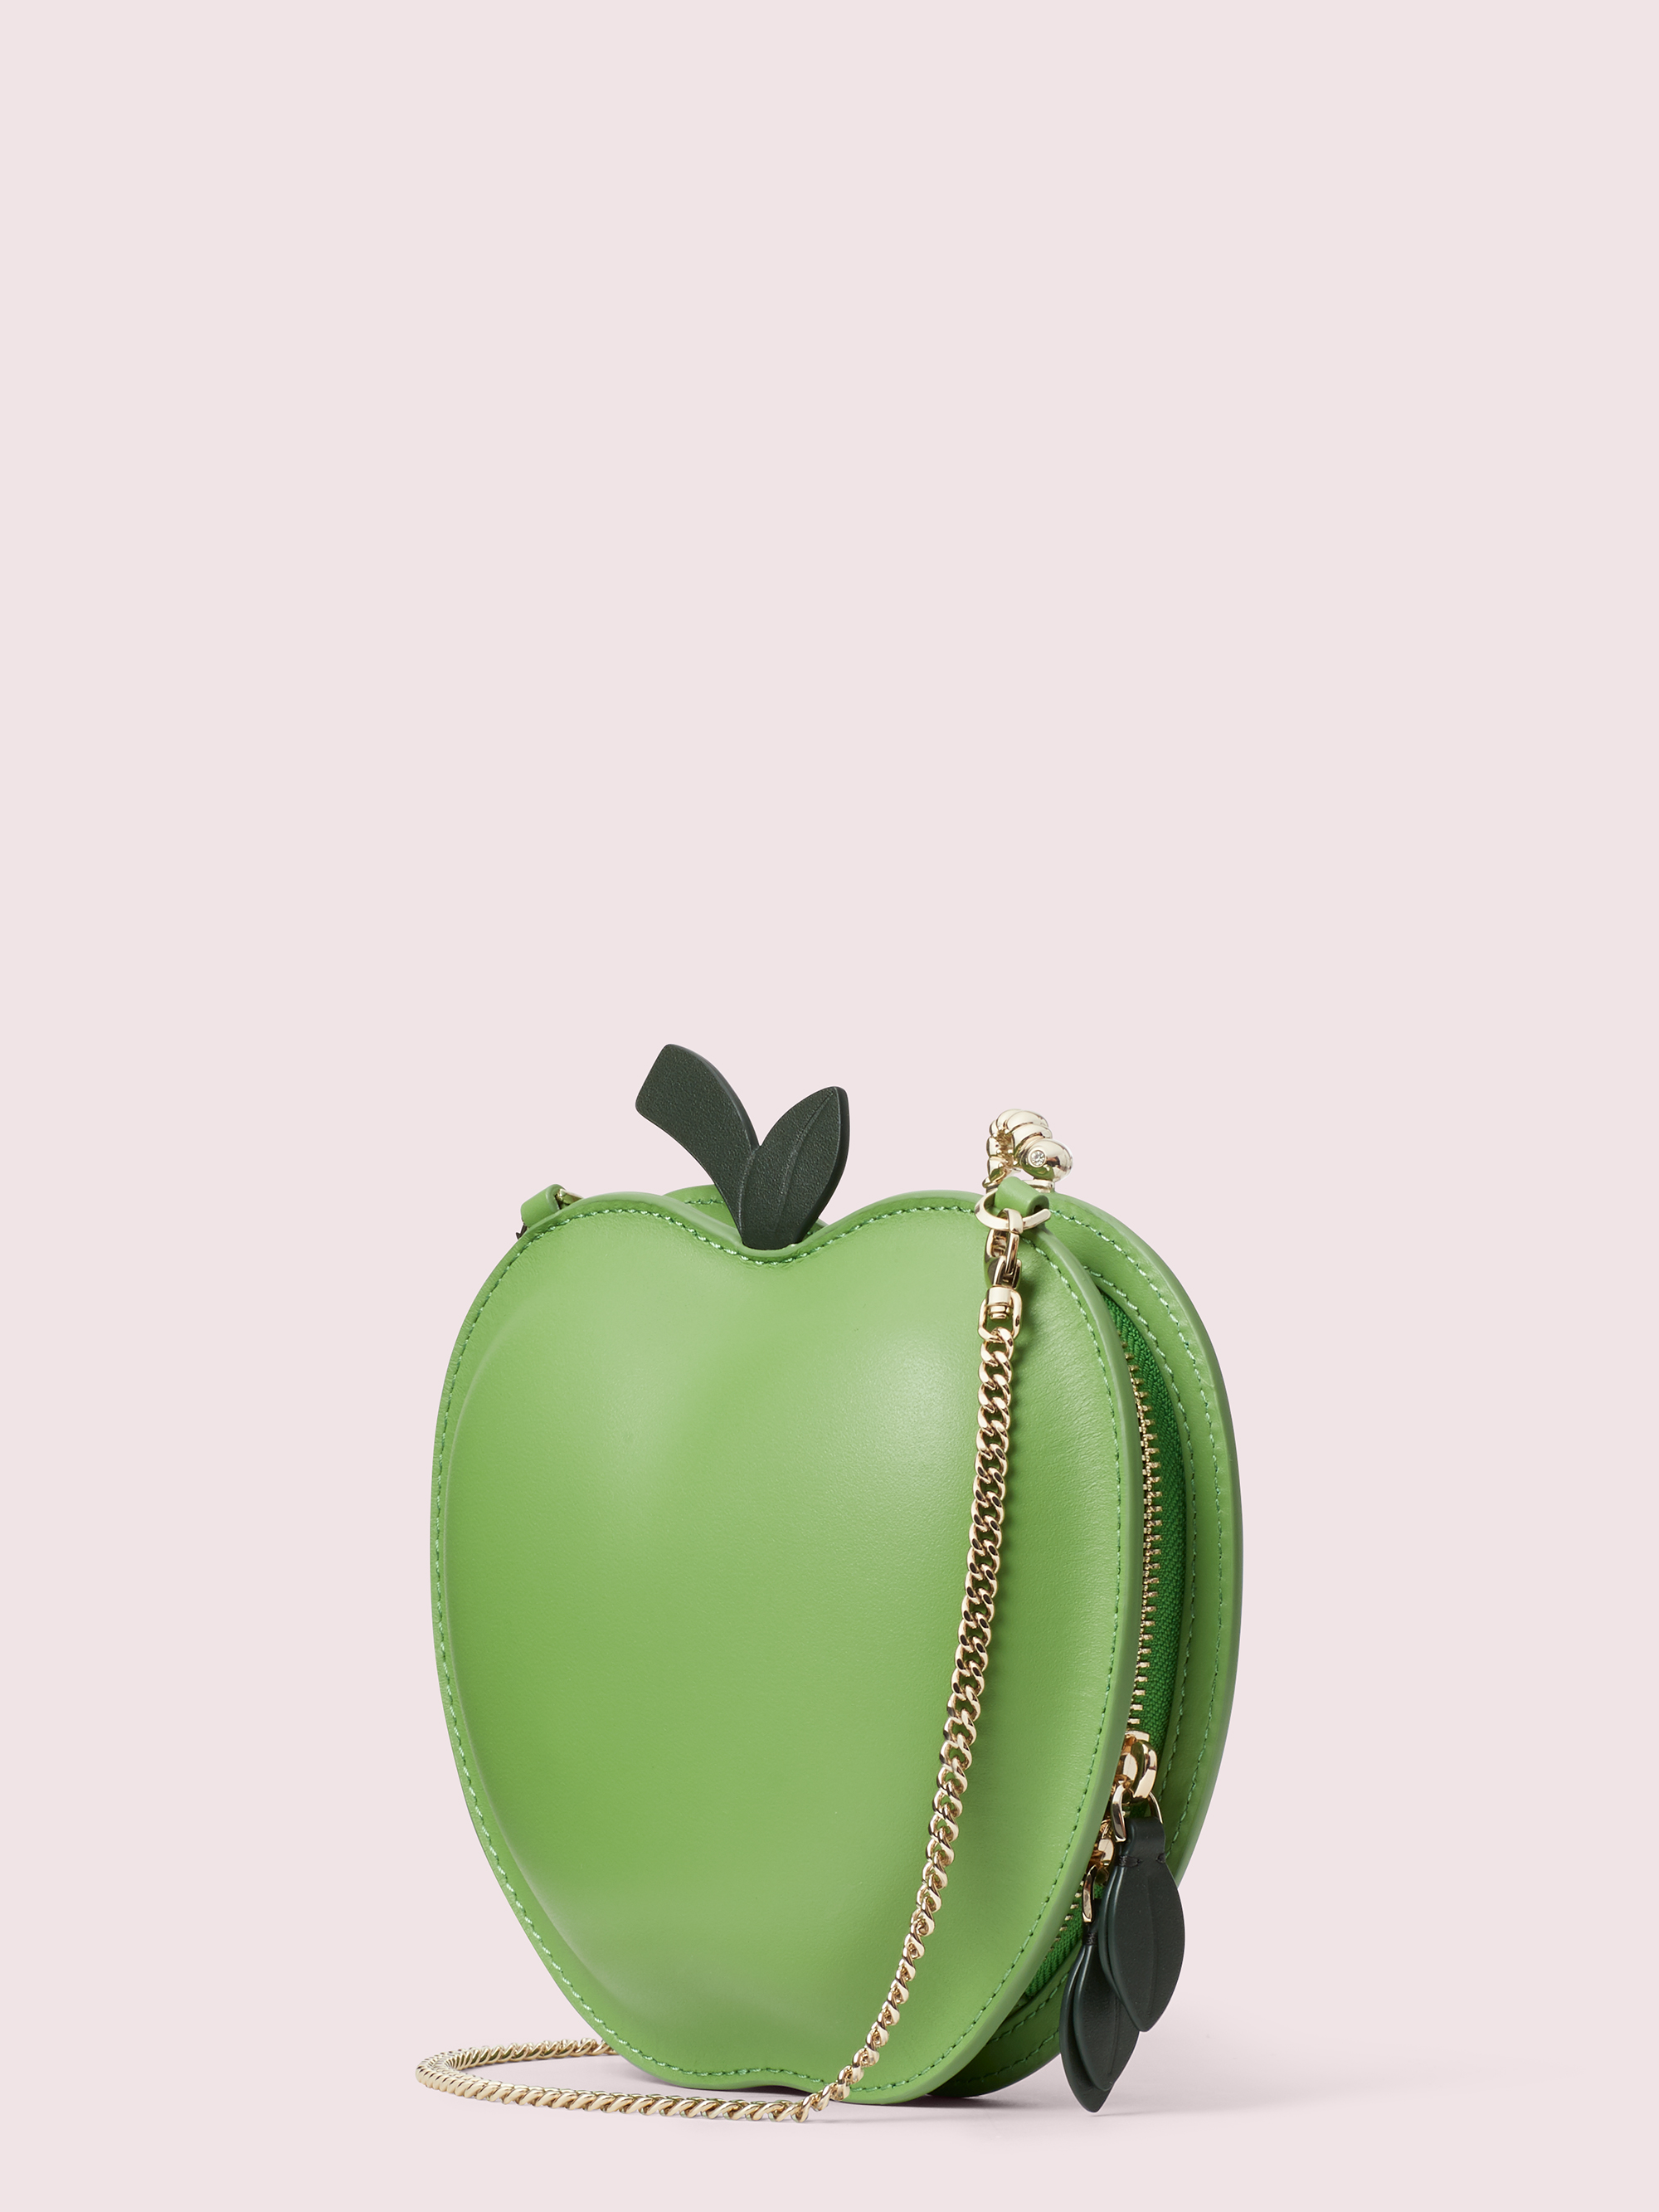 蘋果造型手袋